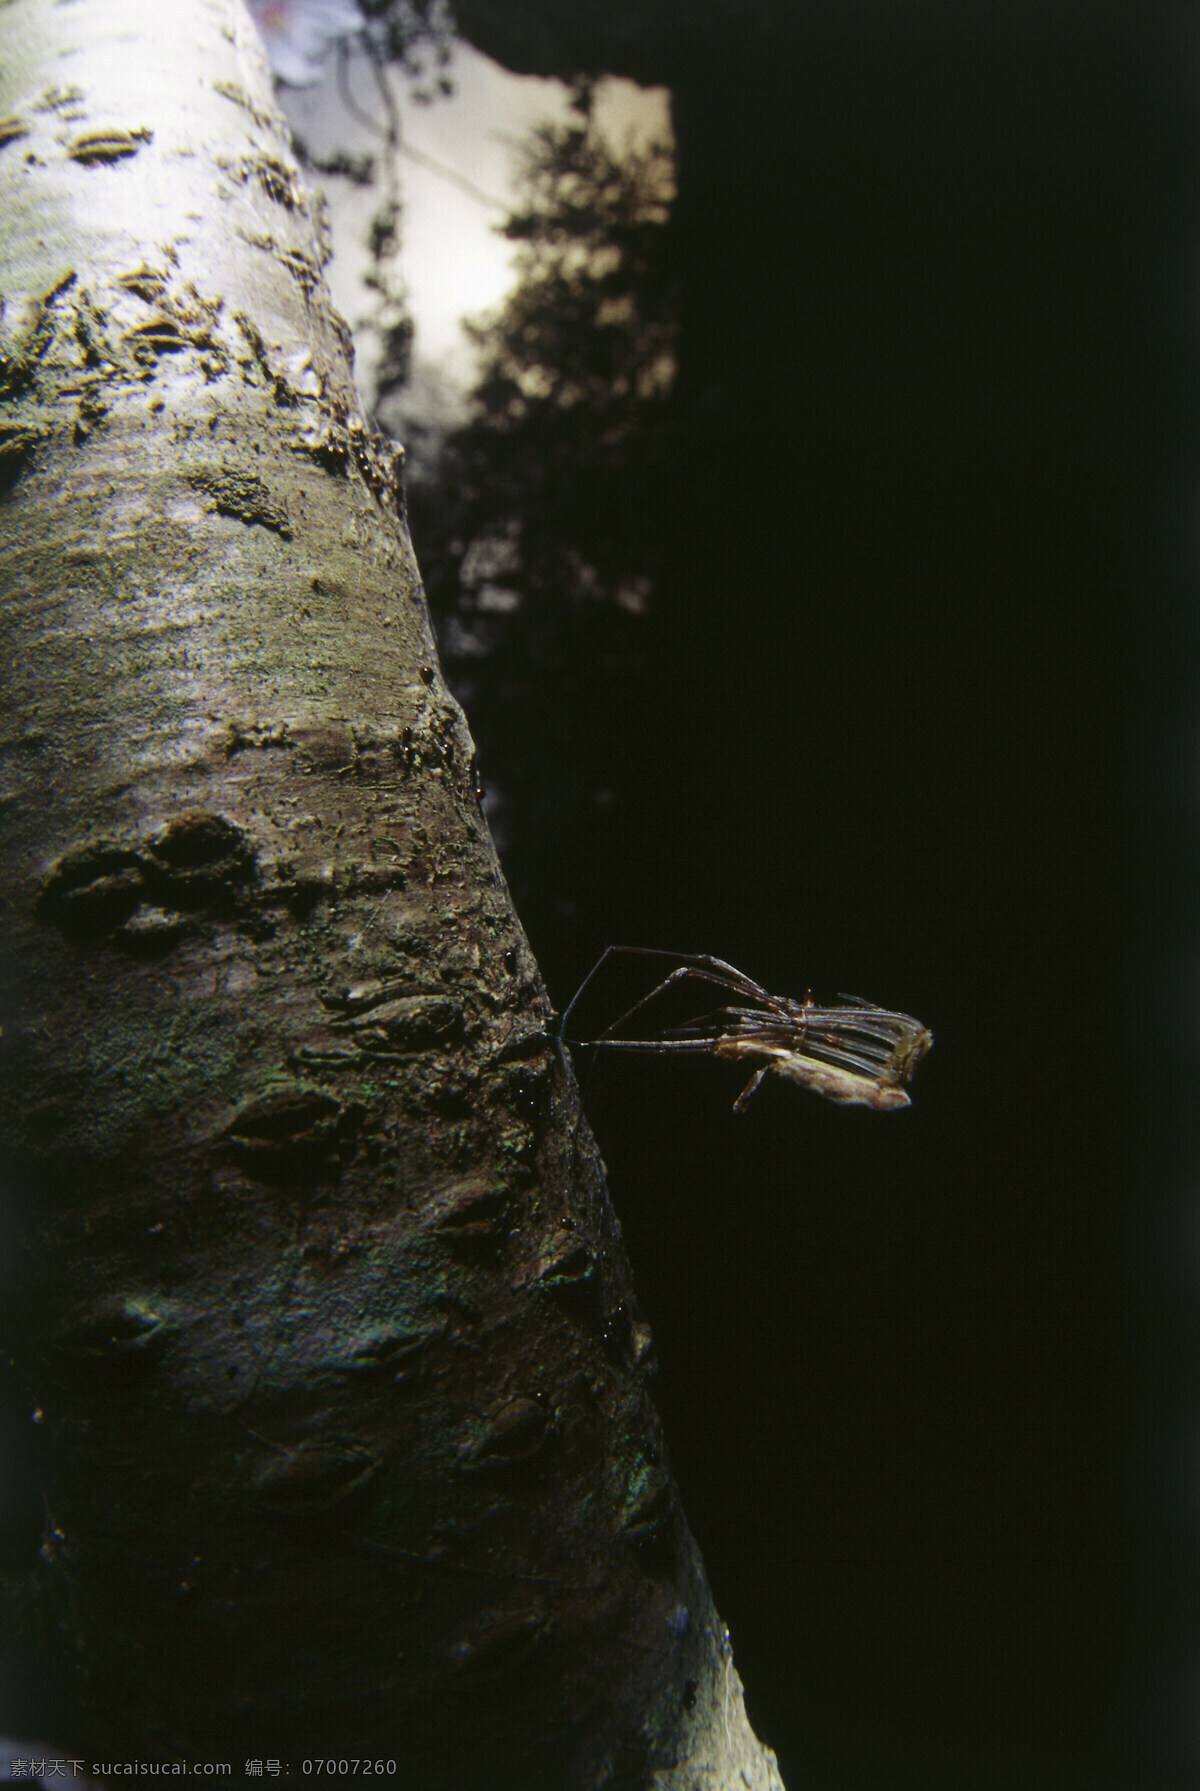 树 杆 上 昆虫 树杆 树枝 昆虫摄影 动物 动物素材 自然 自然风光 大自然 森林 草 图片背景 田野 野外 自然风景 自然景观 黑色